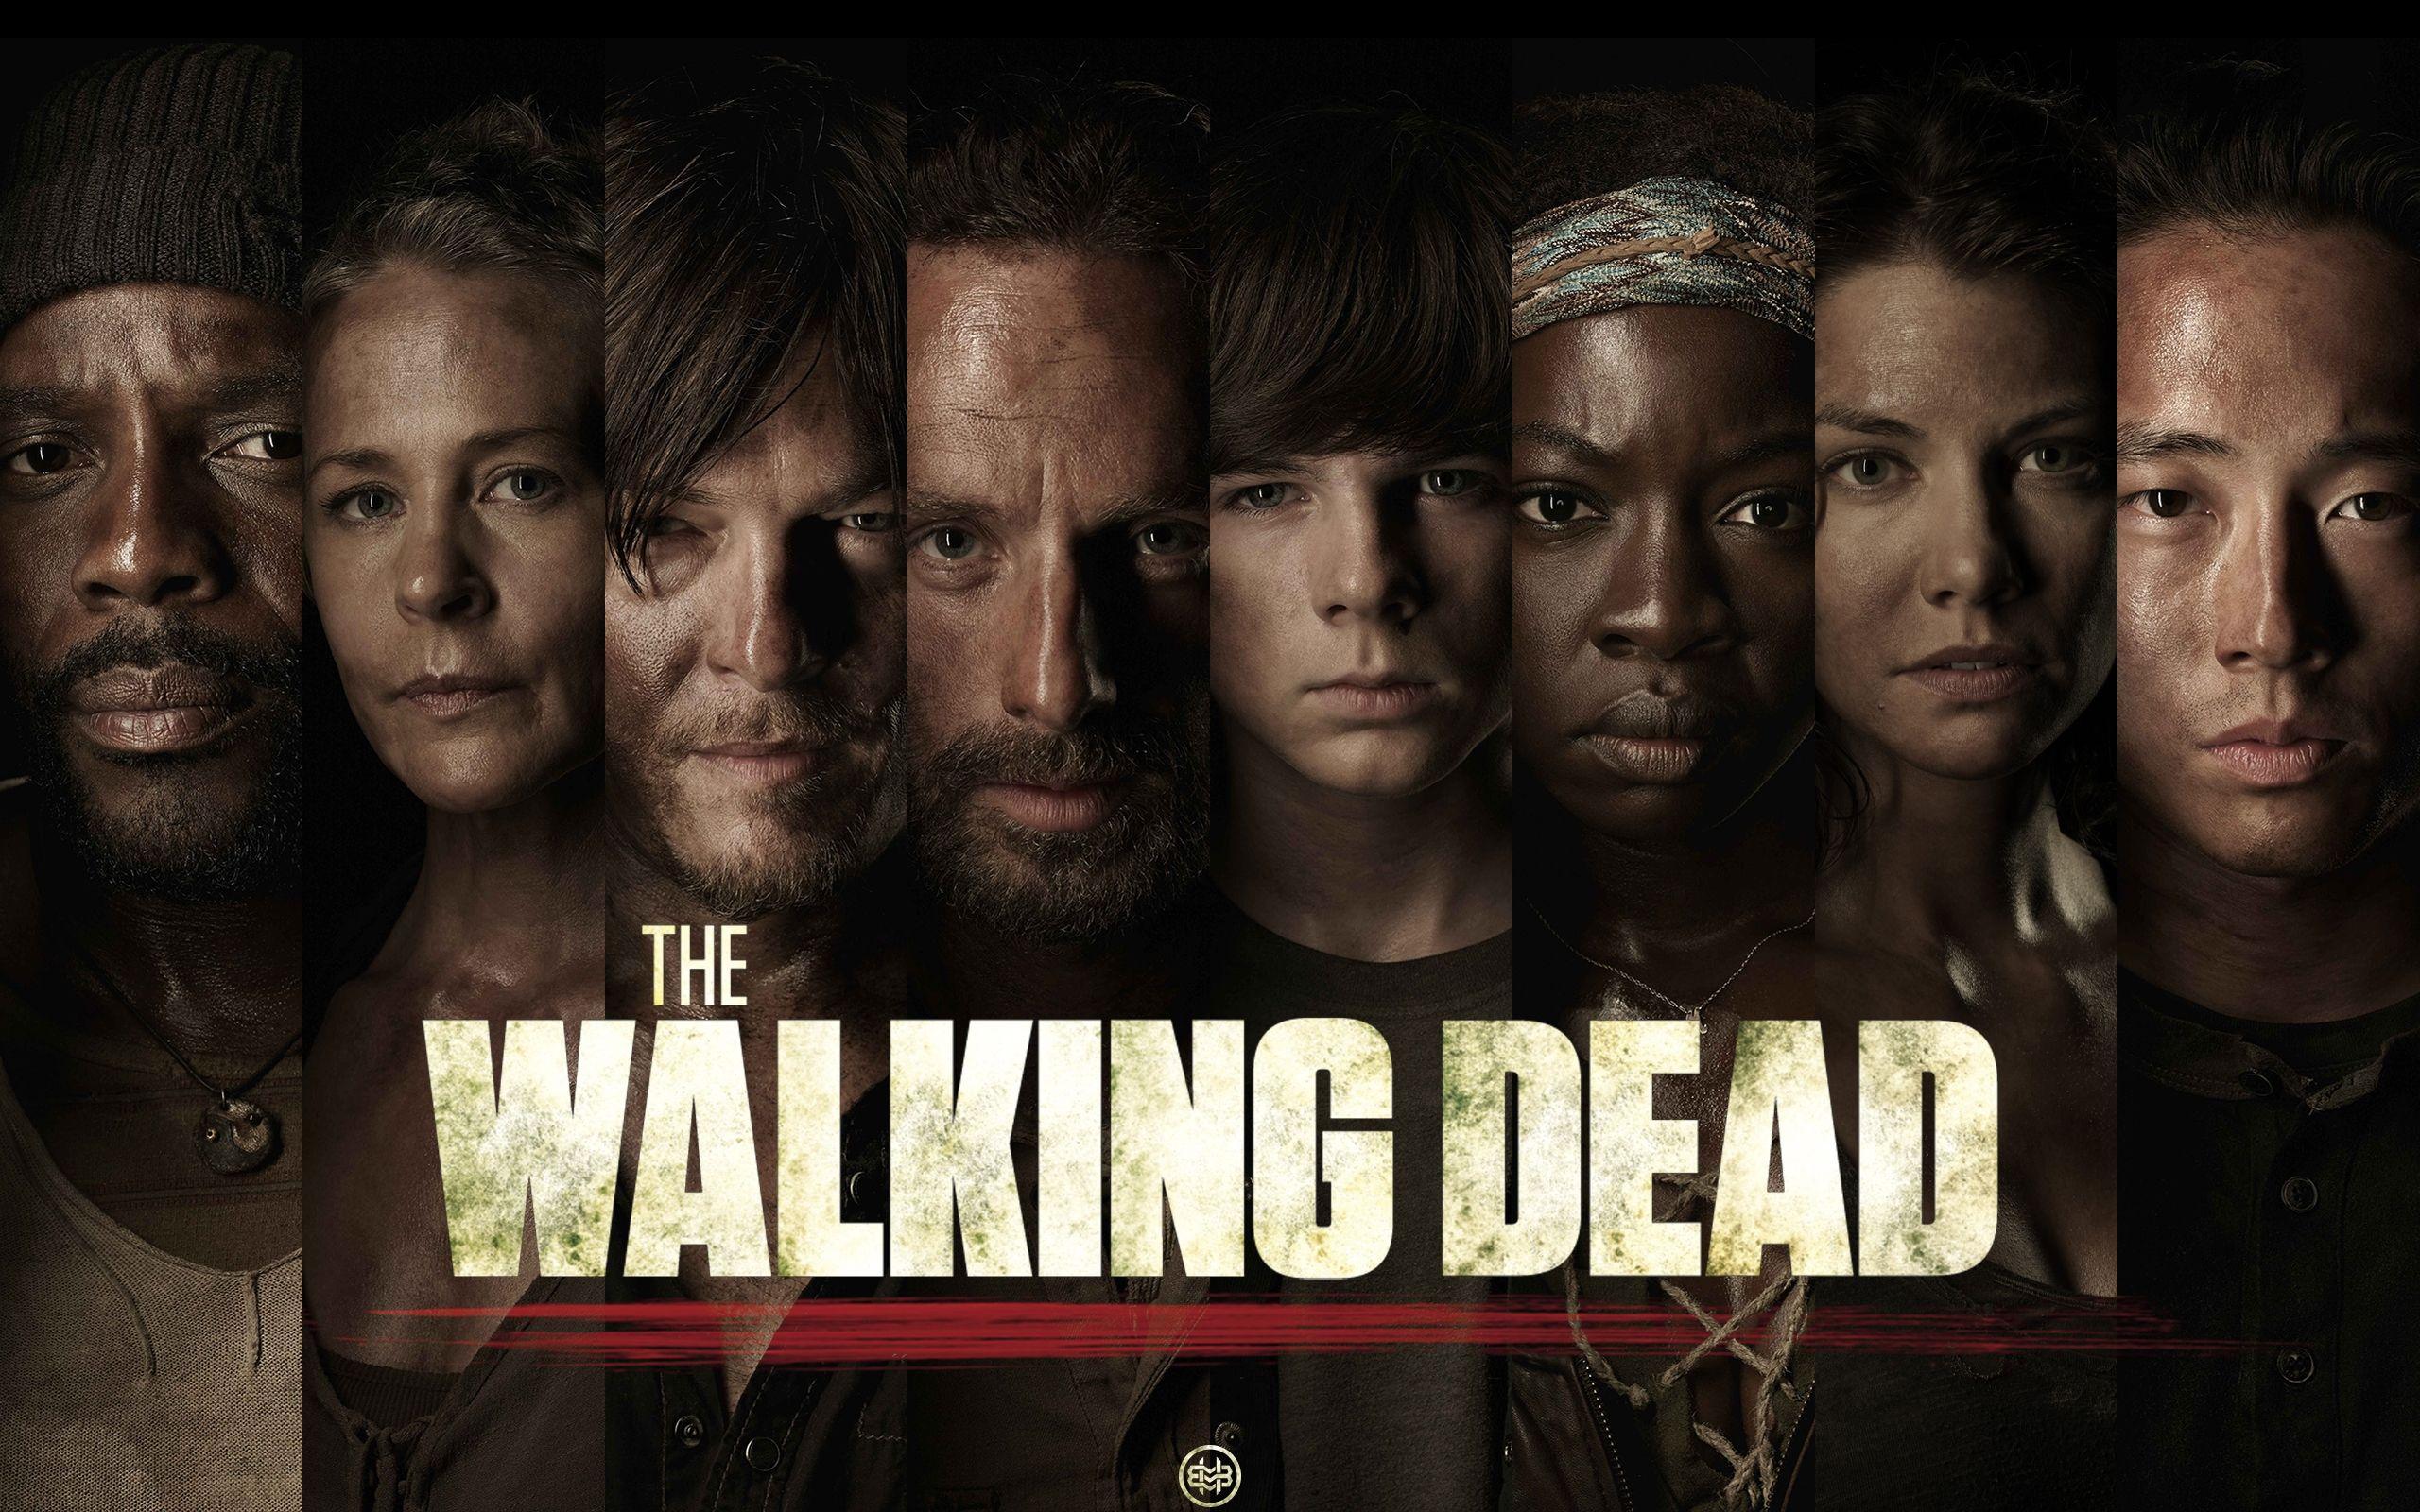 The Walking Dead Characters HD Wallpaper. Download Free HD Wallpaper